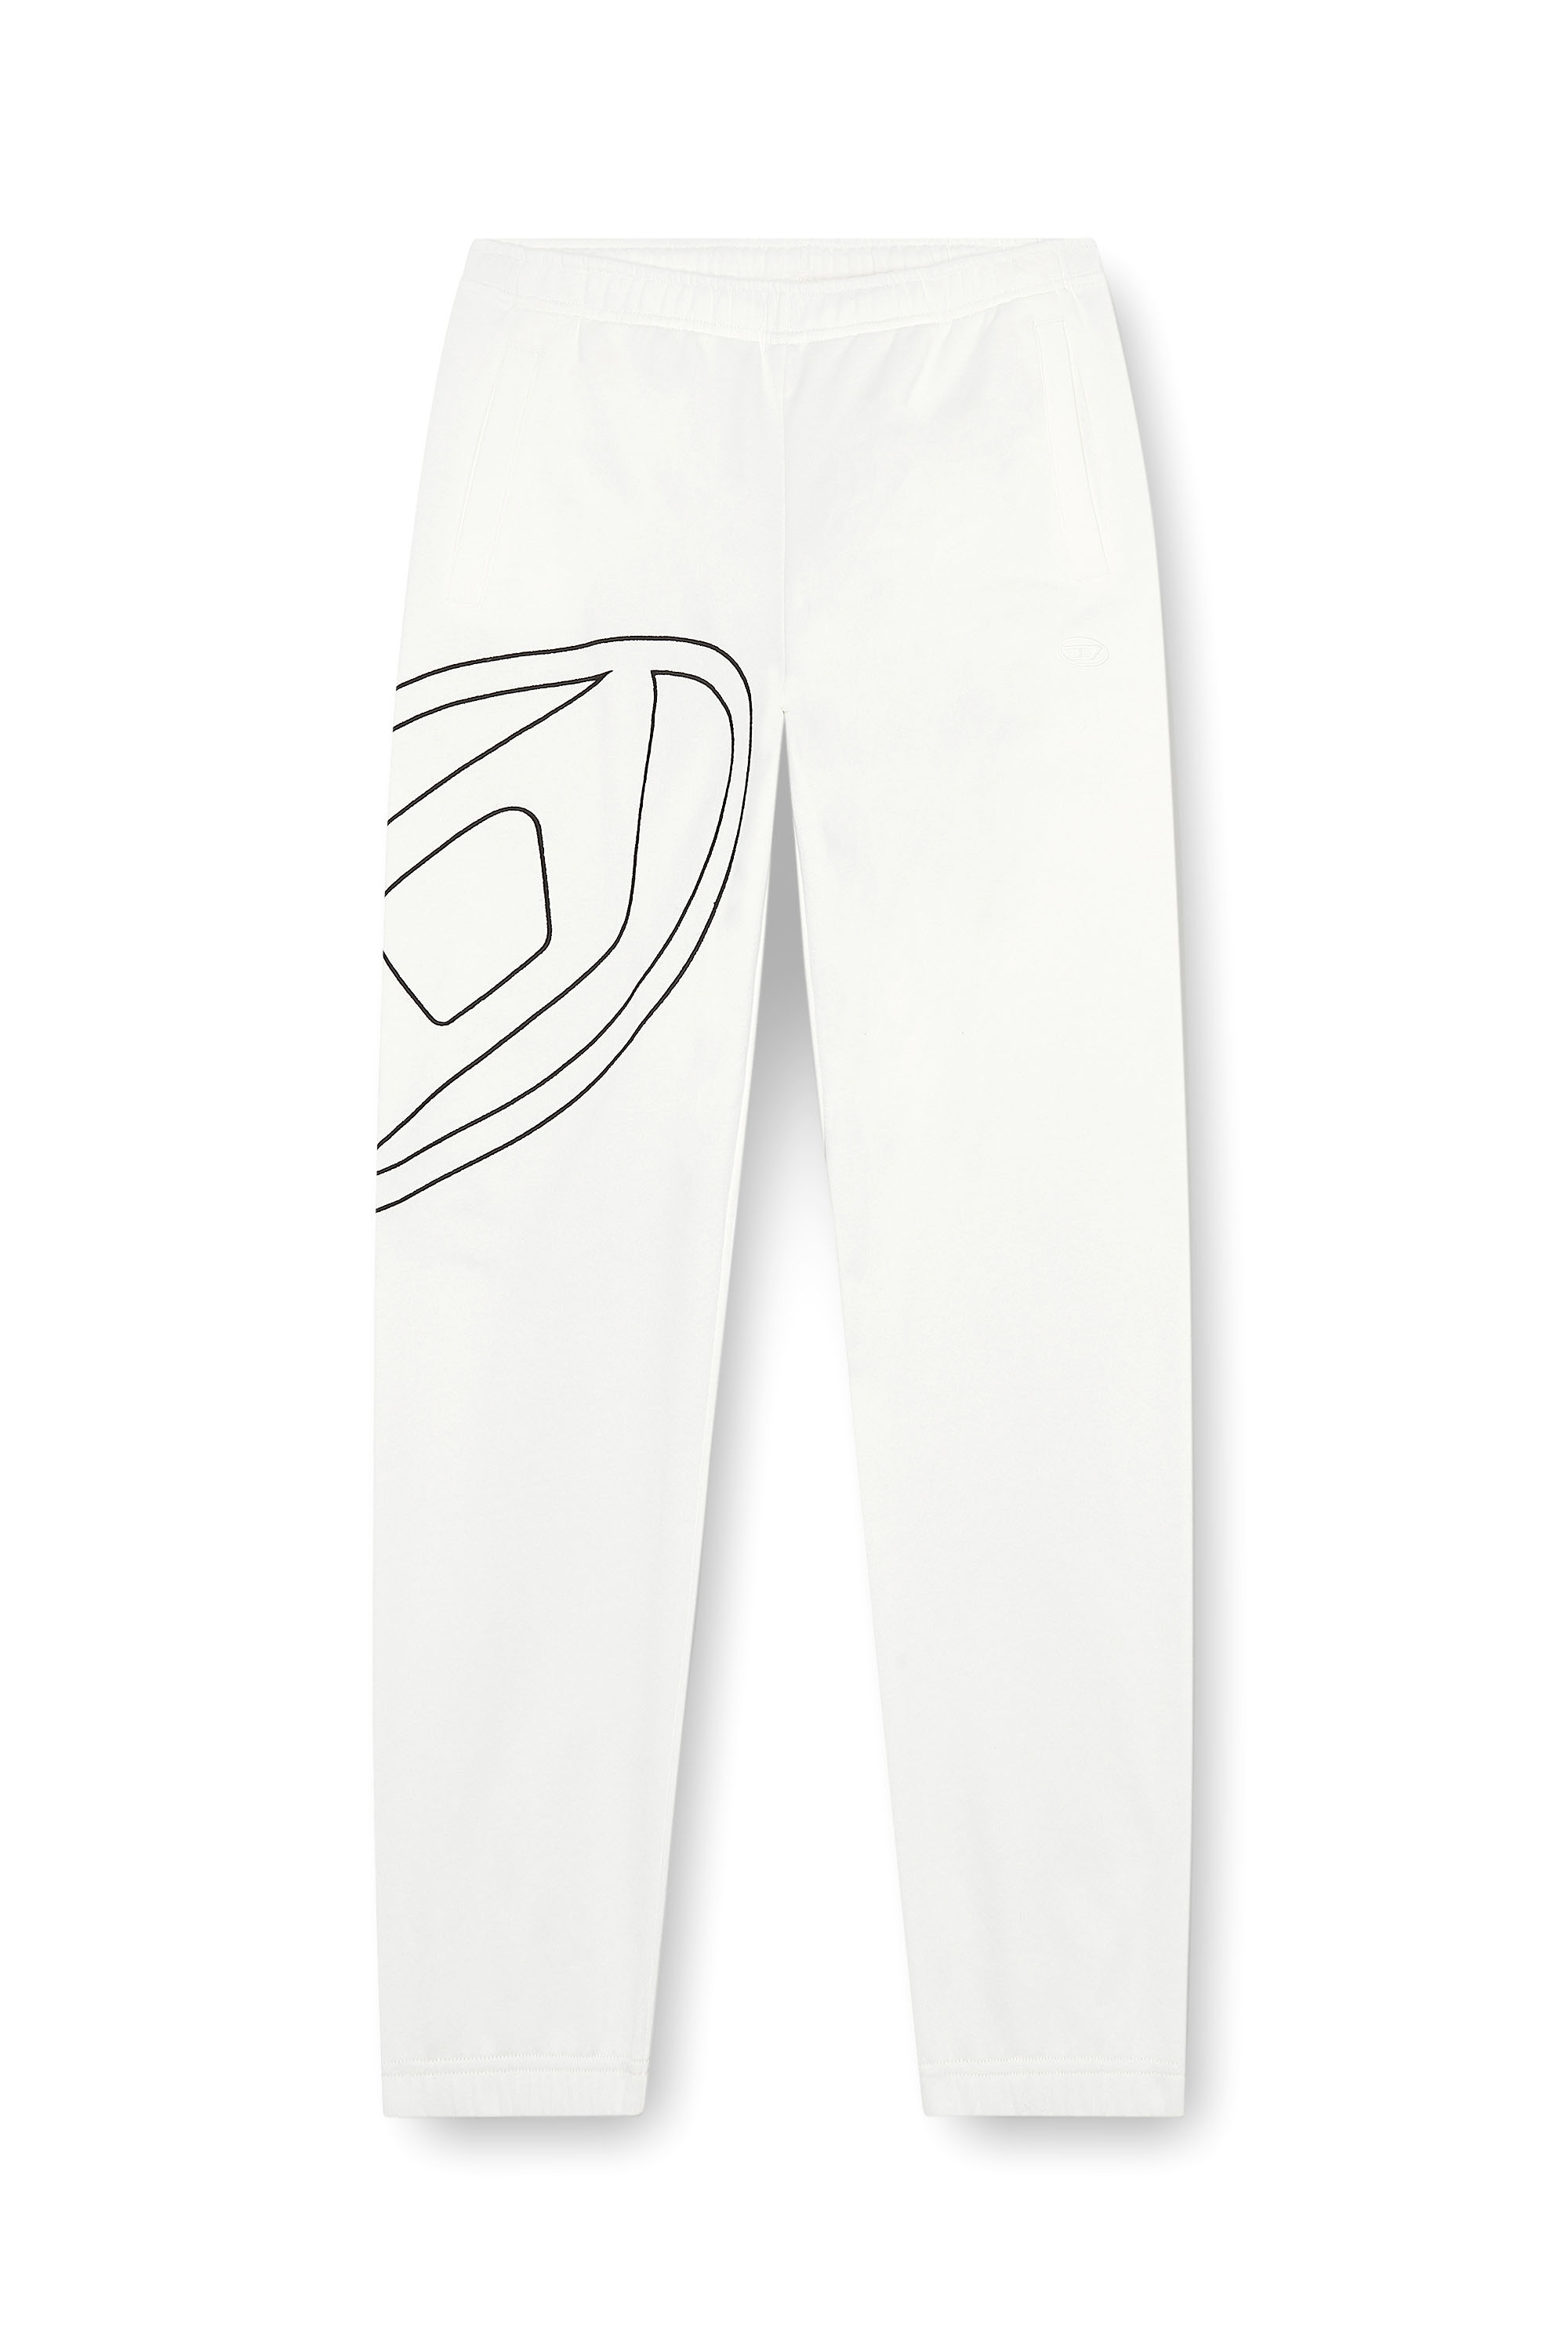 Diesel - P-MARKY-MEGOVAL-D, Homme Pantalon de survêtement avec méga oval D in Blanc - Image 3